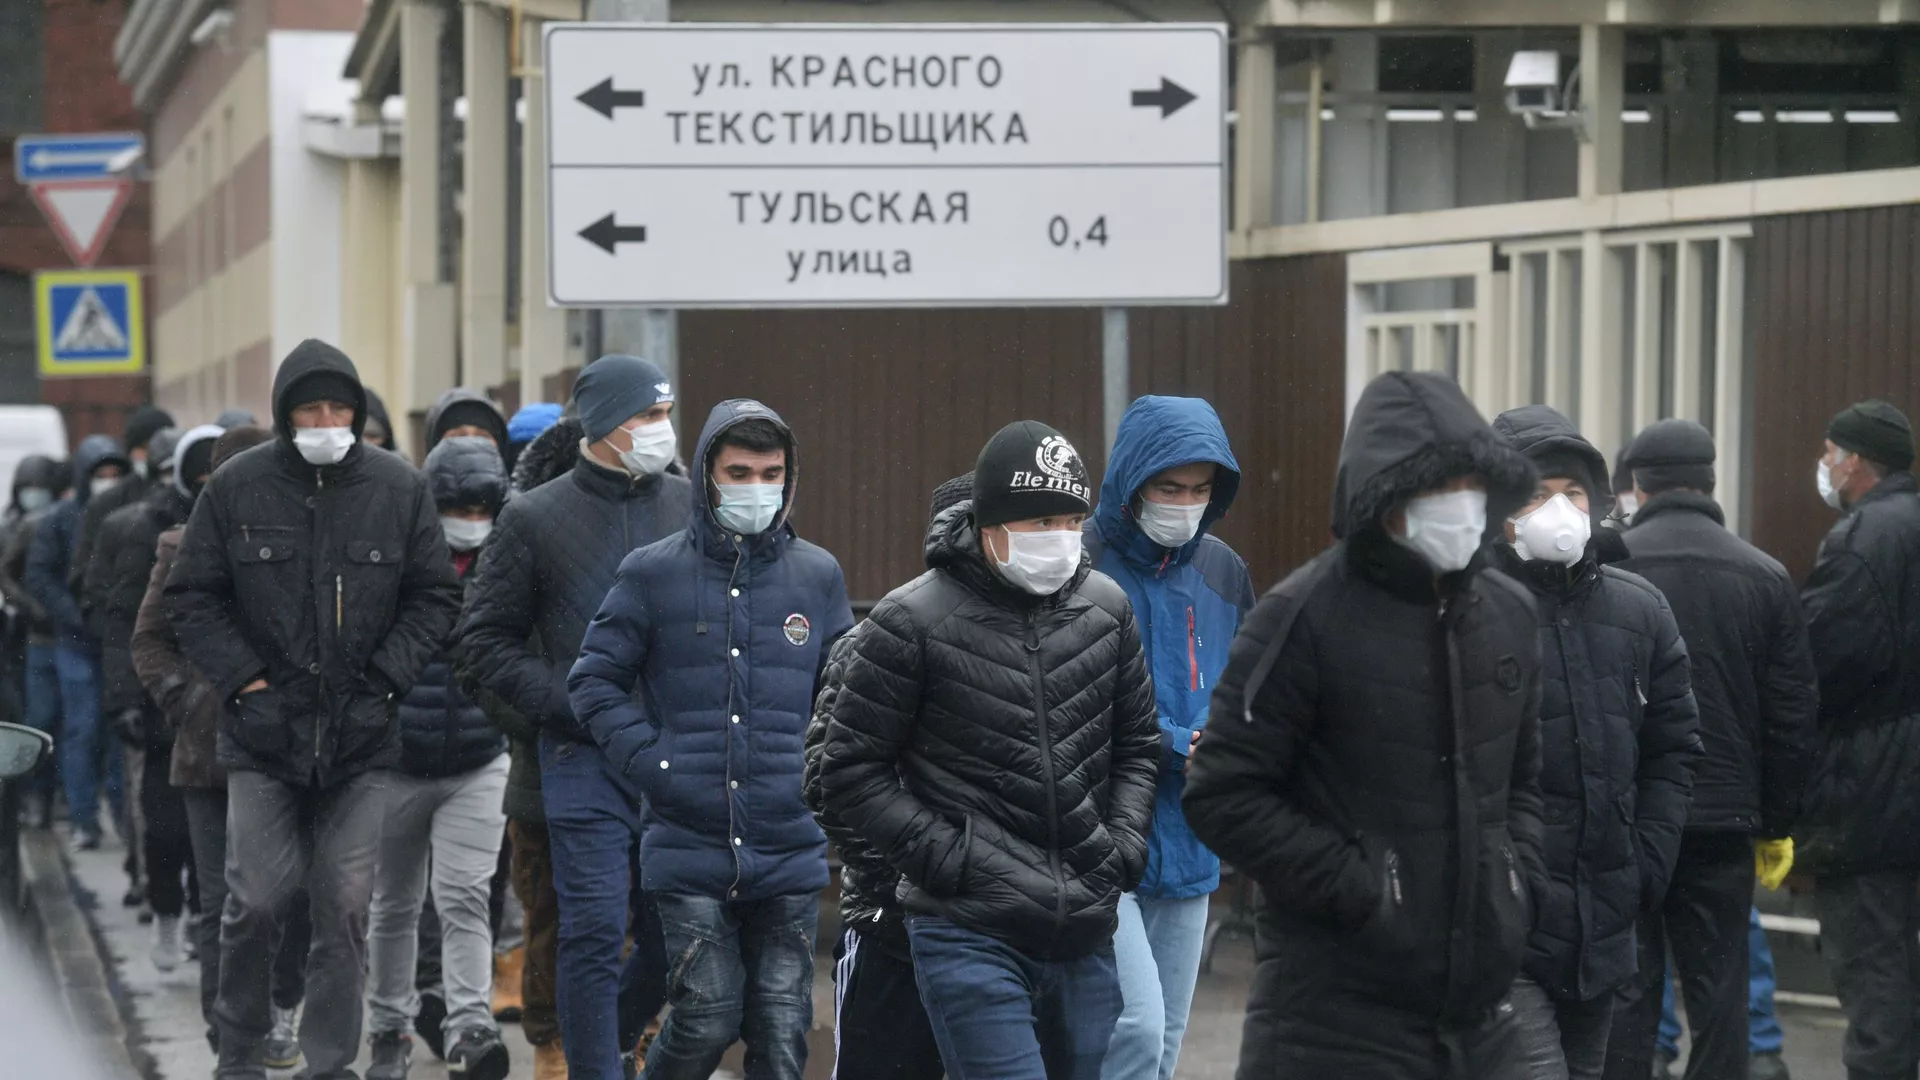 Ռուսաստանում միգրանտներին հունվարի 7-ից կպարտավորեցնեն ՆԳՆ-ին տեղեկացնել երկրում աշխատանք սկսելու մասին